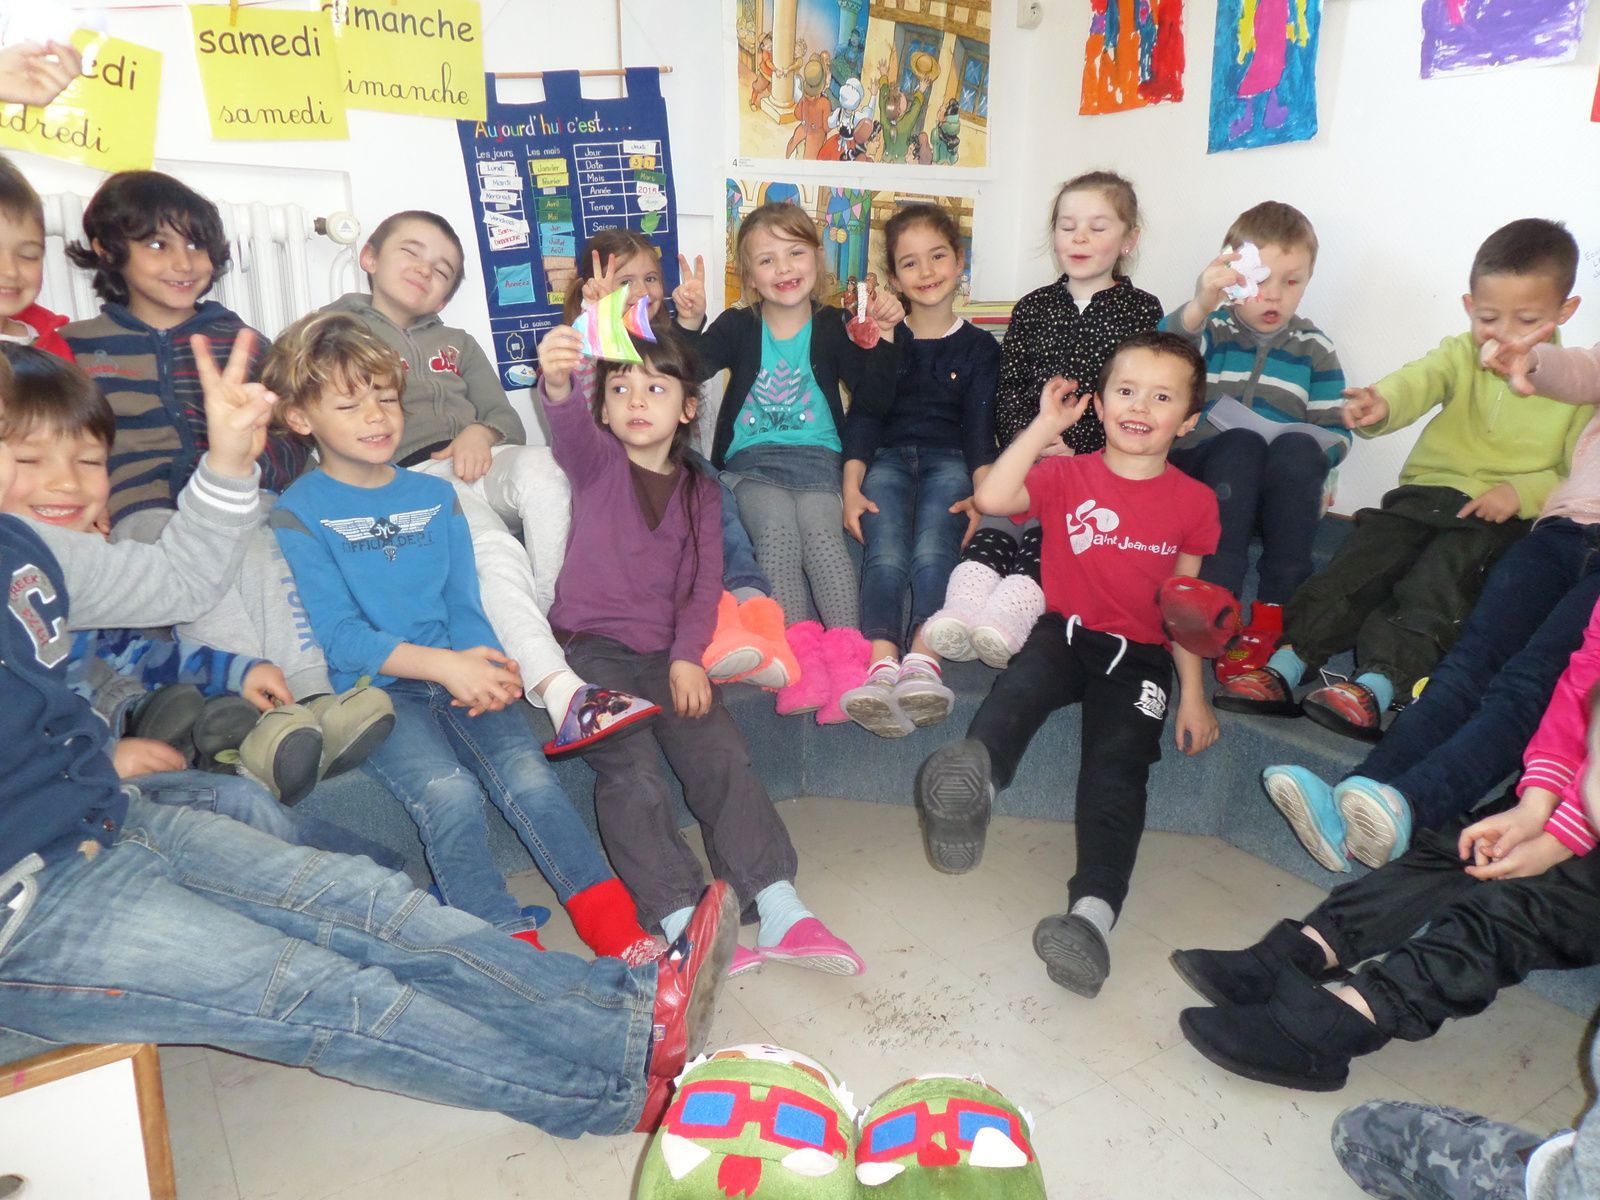 Les chaussons en classe - Le blog de l'école publique Les Rives du Loch